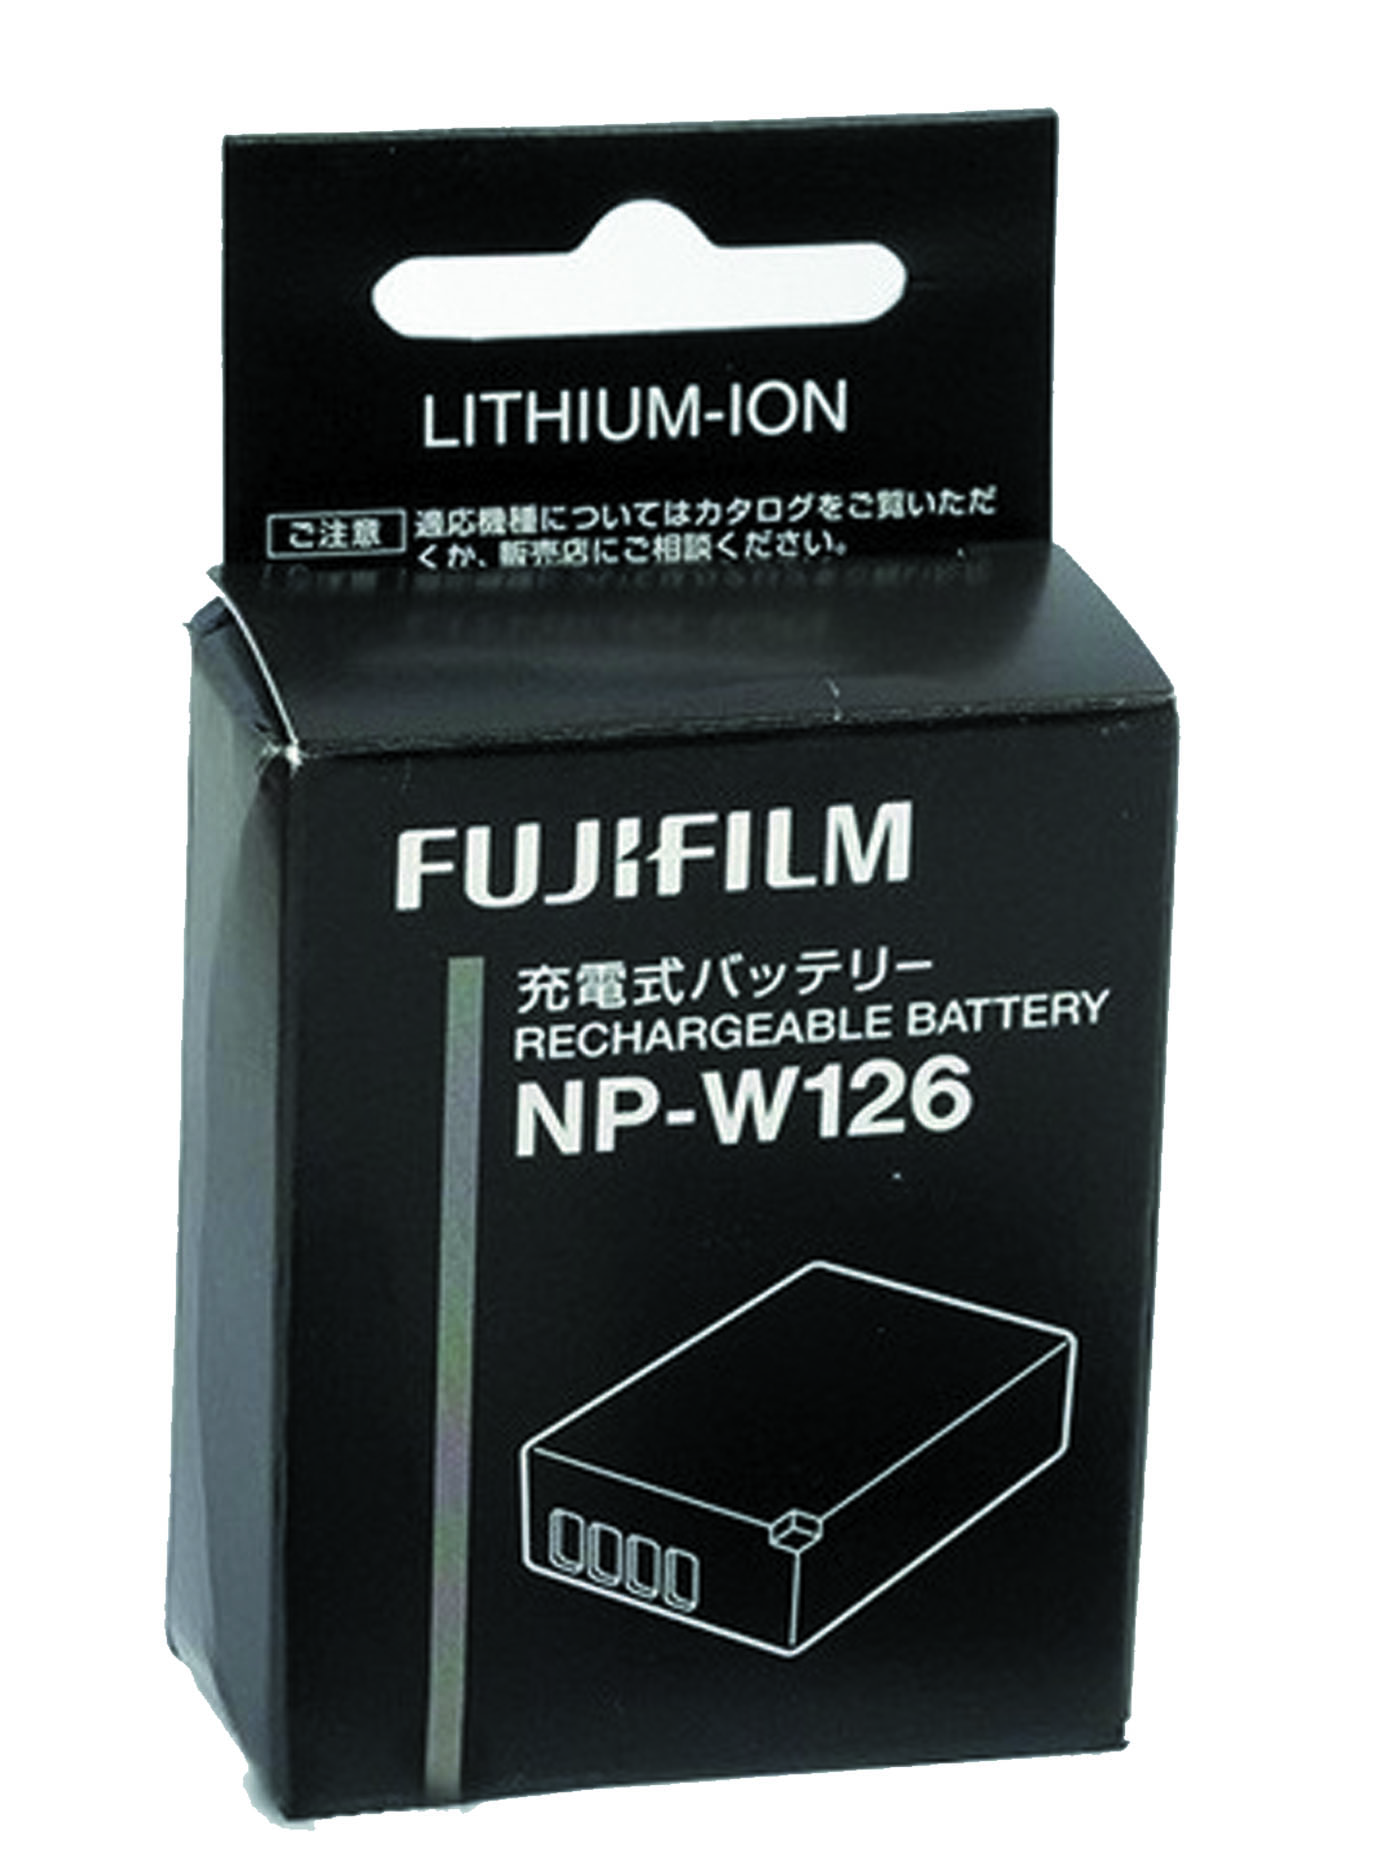 Hình ảnh Pin NP-W126 cho máy ảnh Fujifilm